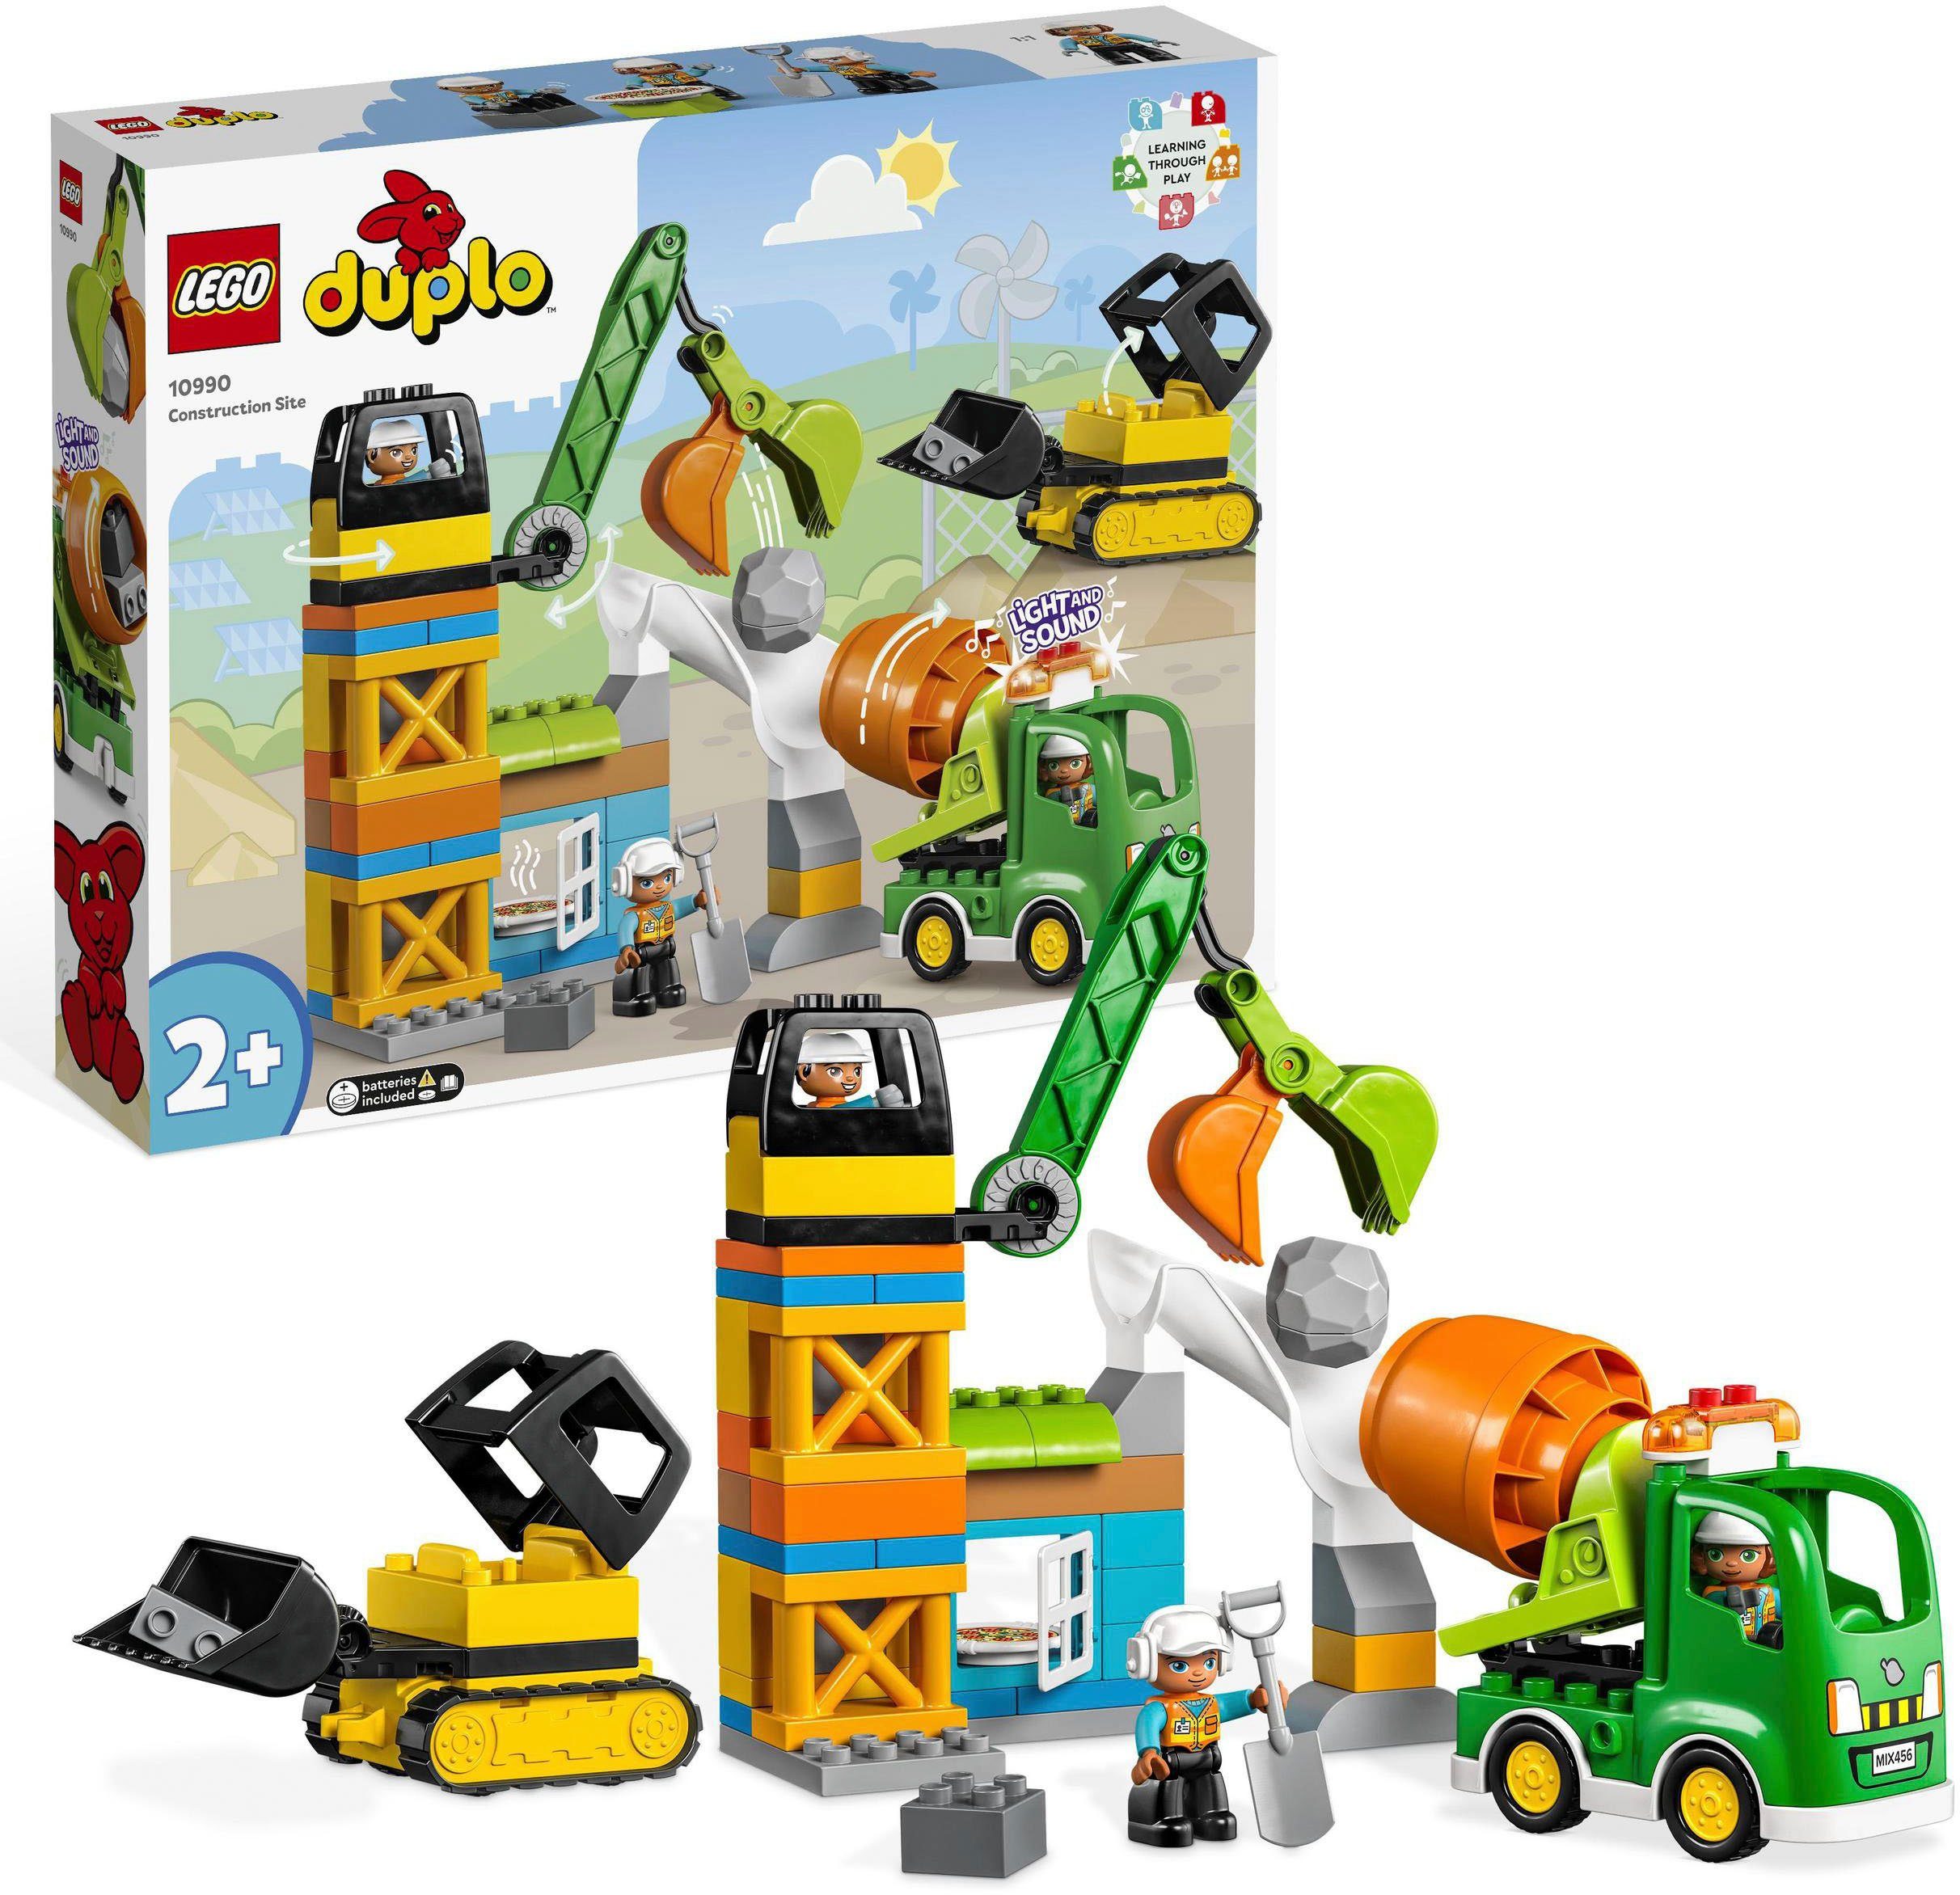 LEGO® Konstruktionsspielsteine (10990), mit Sound; und Town, in Licht DUPLO Made St), Europe (61 Baustelle LEGO® mit Baufahrzeugen